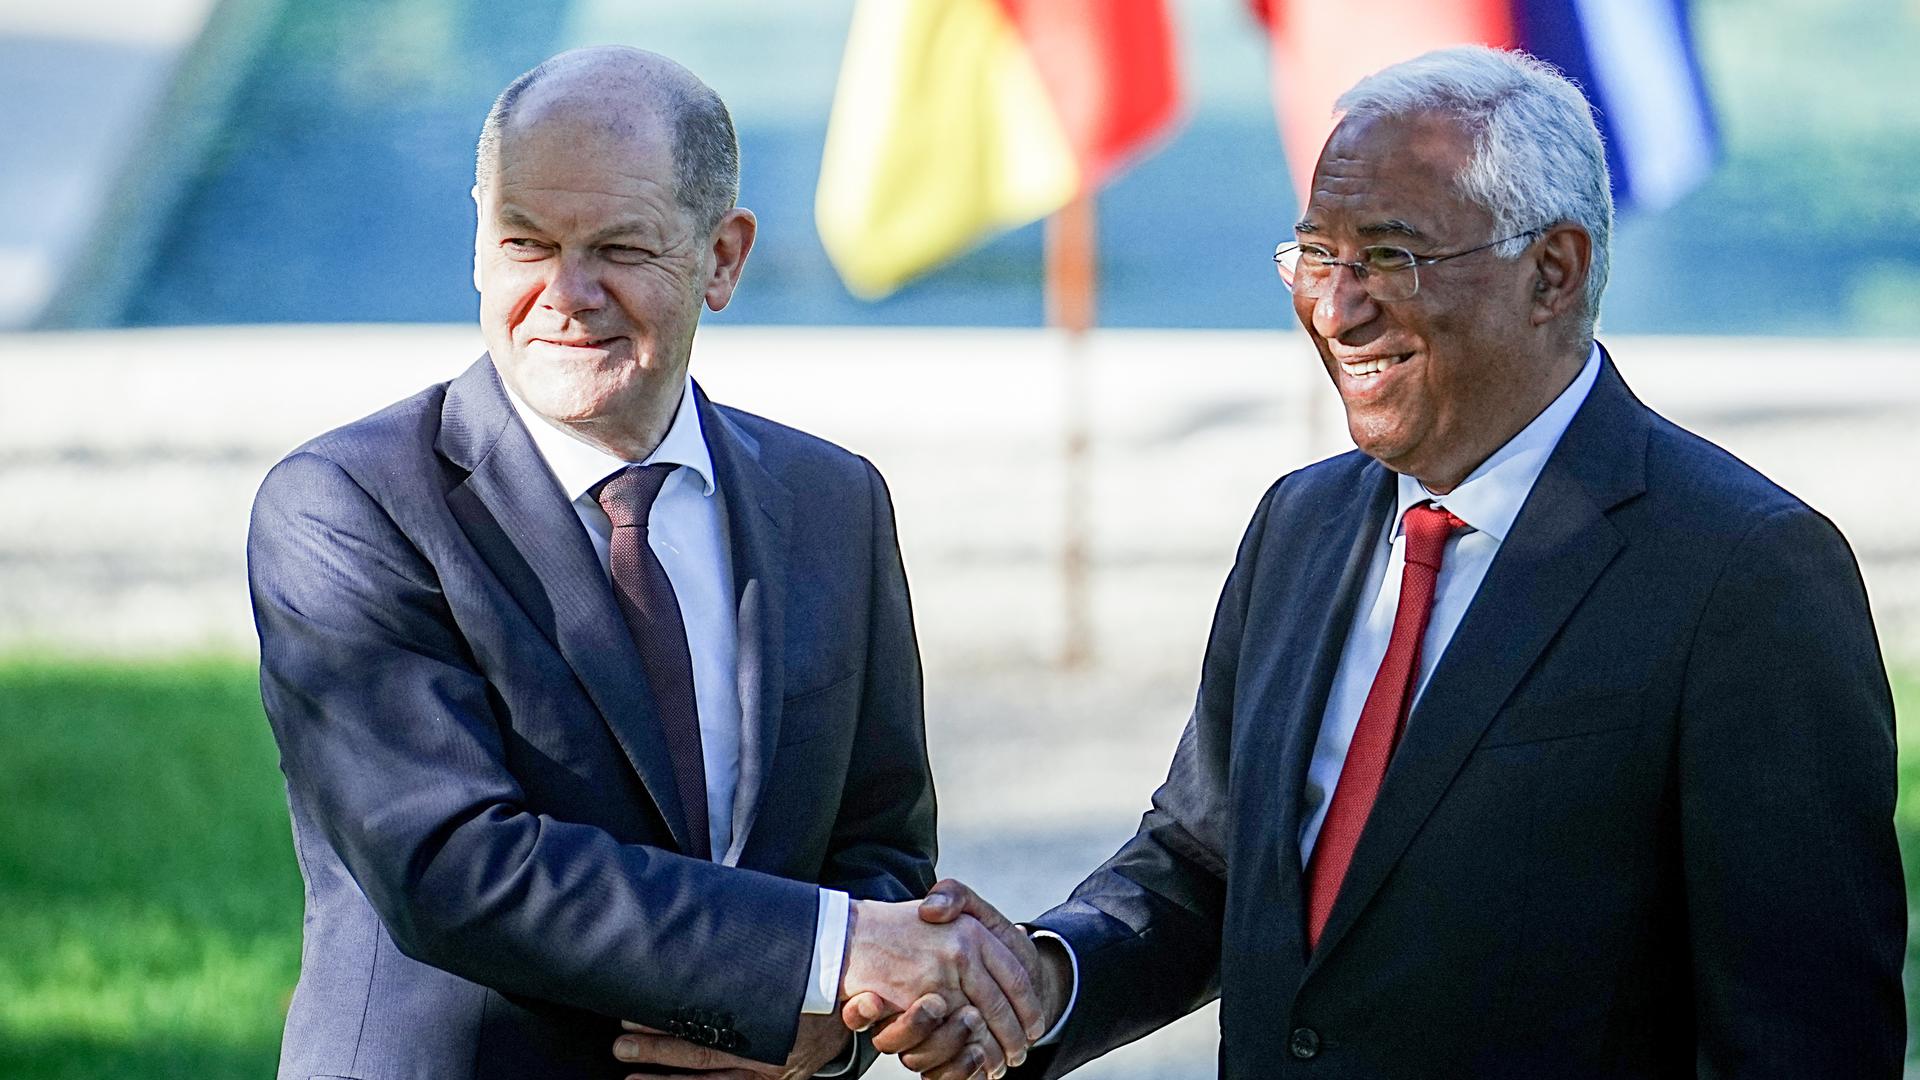 Bundeskanzler Olaf Scholz und Antonio Costa, Ministerpräsident von Portugal, stehen in der Hauptstadt Lissabon nach der Pressekonferenz zusammen.Sie schütteln sich die Hände und lächeln in die Fotokamera.